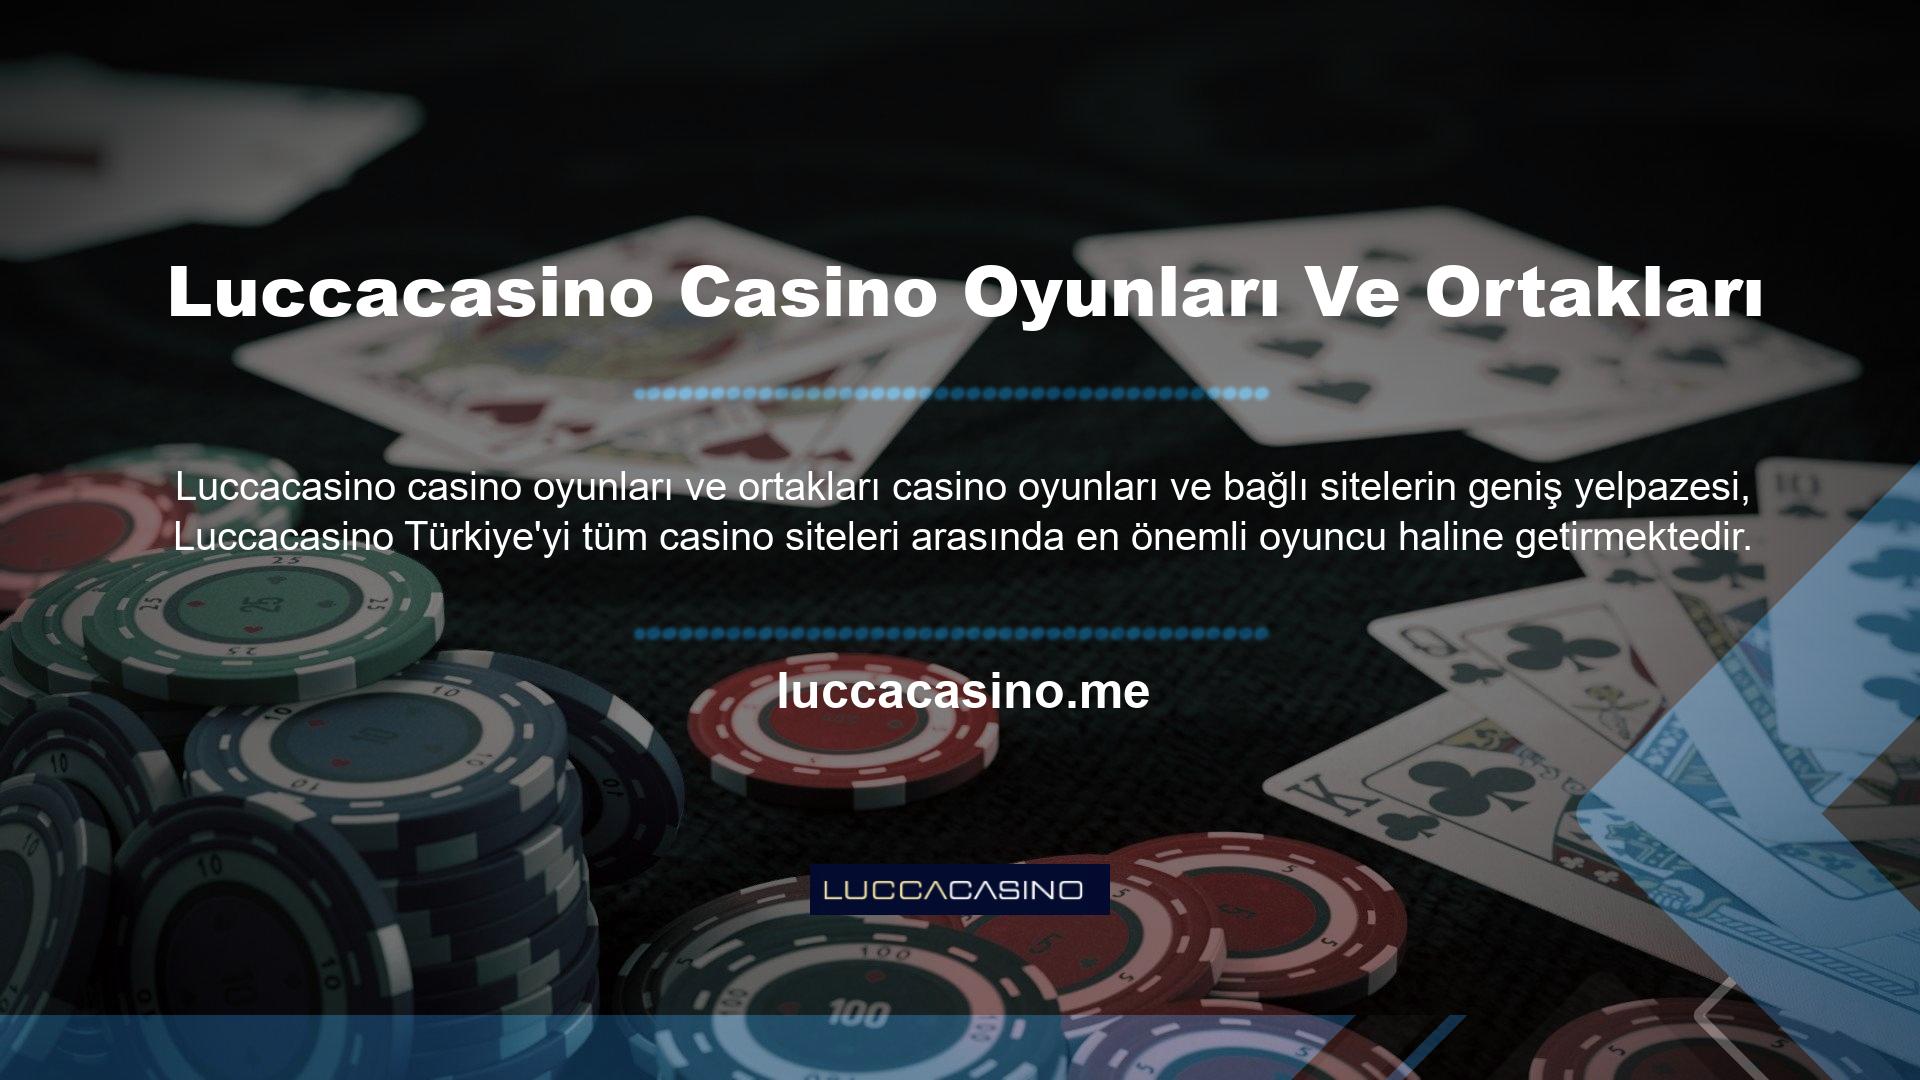 Luccacasino Casino Games ve ortakları yalnızca sistemlerinin güvenilirliğini kanıtlamış ve çok sayıda başka sağlayıcıyla anlaşma imzalamış profesyonel casino oyunu sağlayıcılarından yararlanmaktadır